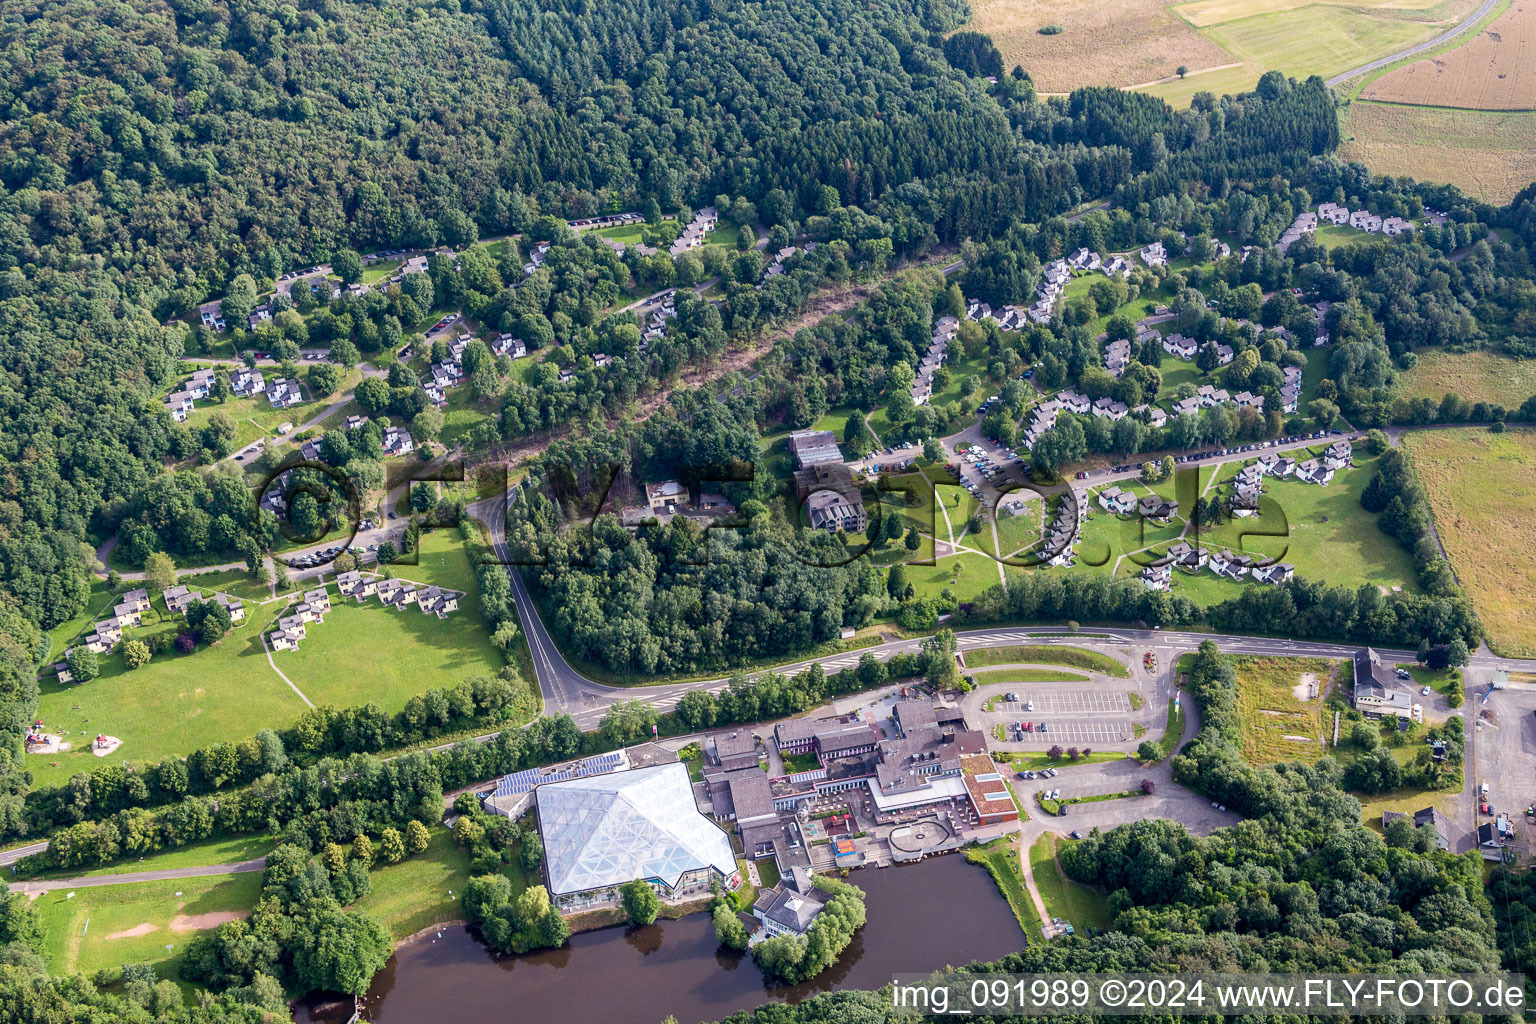 Luftaufnahme von Ferienhaus- Anlage des Ferienparks Ferienpark Hambachtal in Oberhambach im Bundesland Rheinland-Pfalz, Deutschland